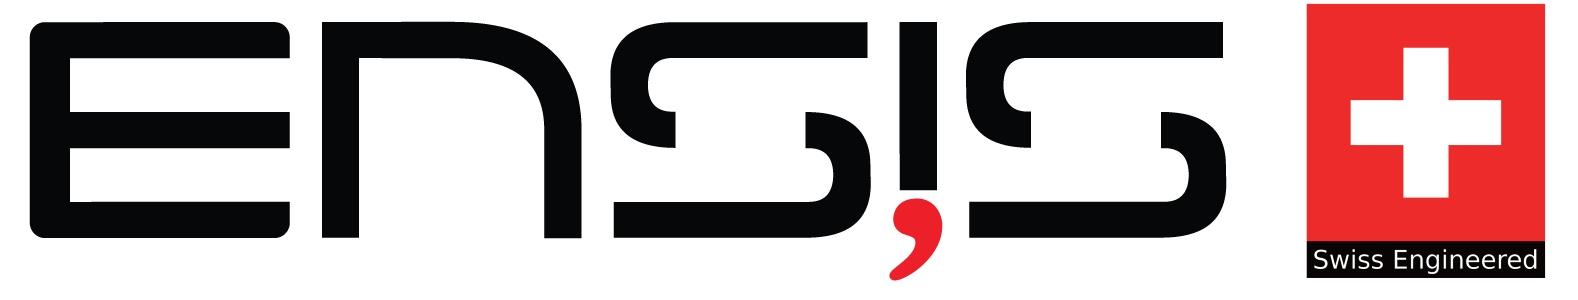 Ensis+logo.png